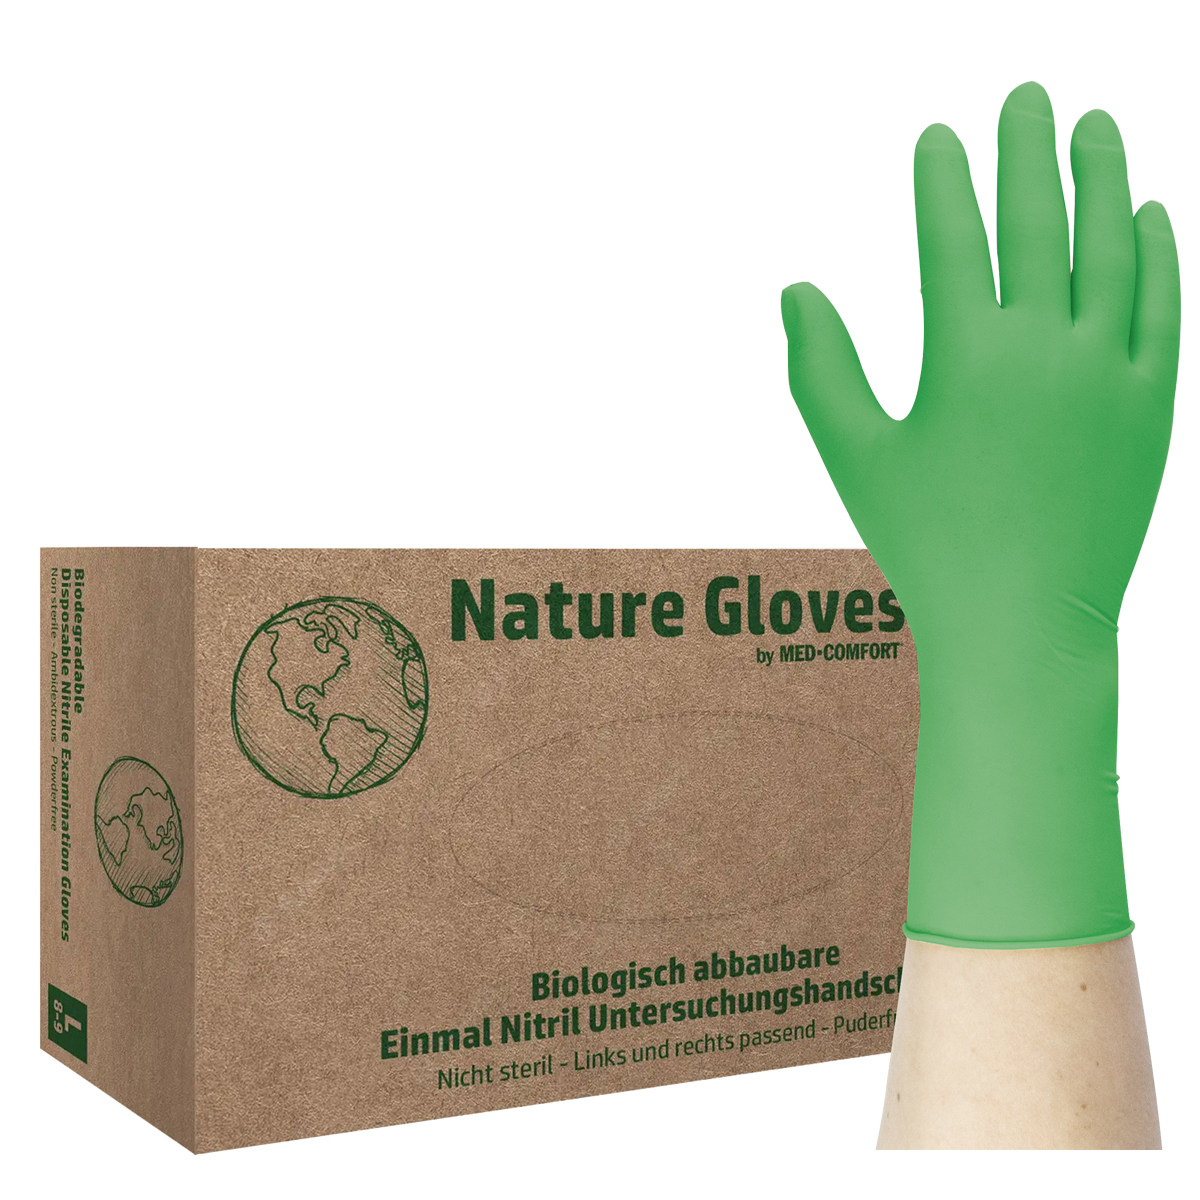 Nature Gloves by MED-COMFORT – Nitrilhandschuhe, biologisch abbaubar, puderfrei, 100 Stück (30060)